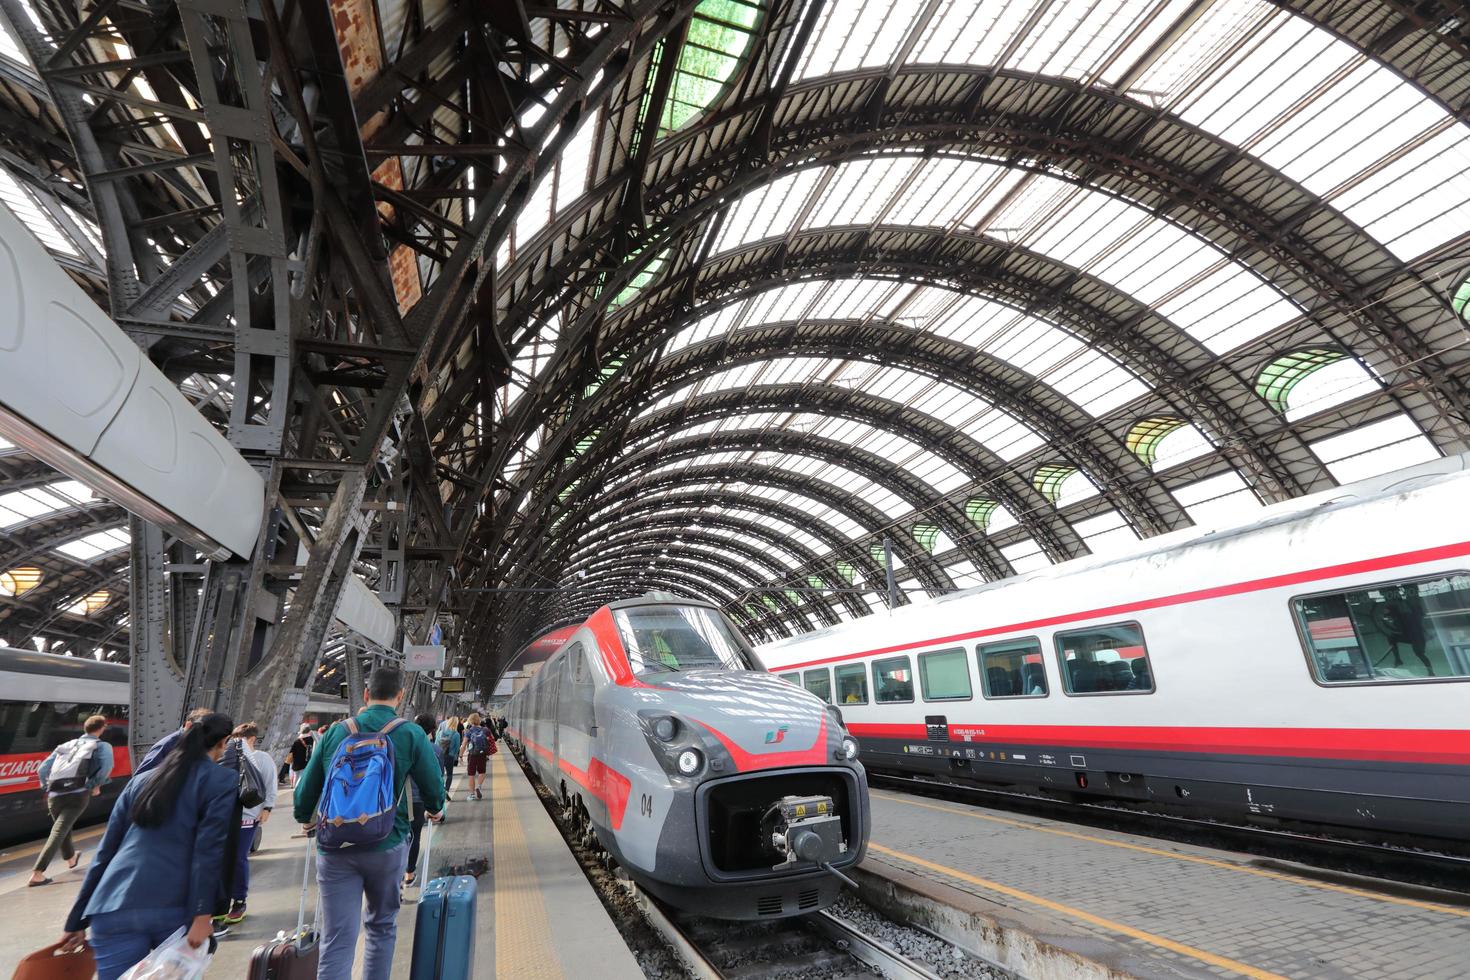 hogesnelheidstreinen op het centraal station van Milaan foto